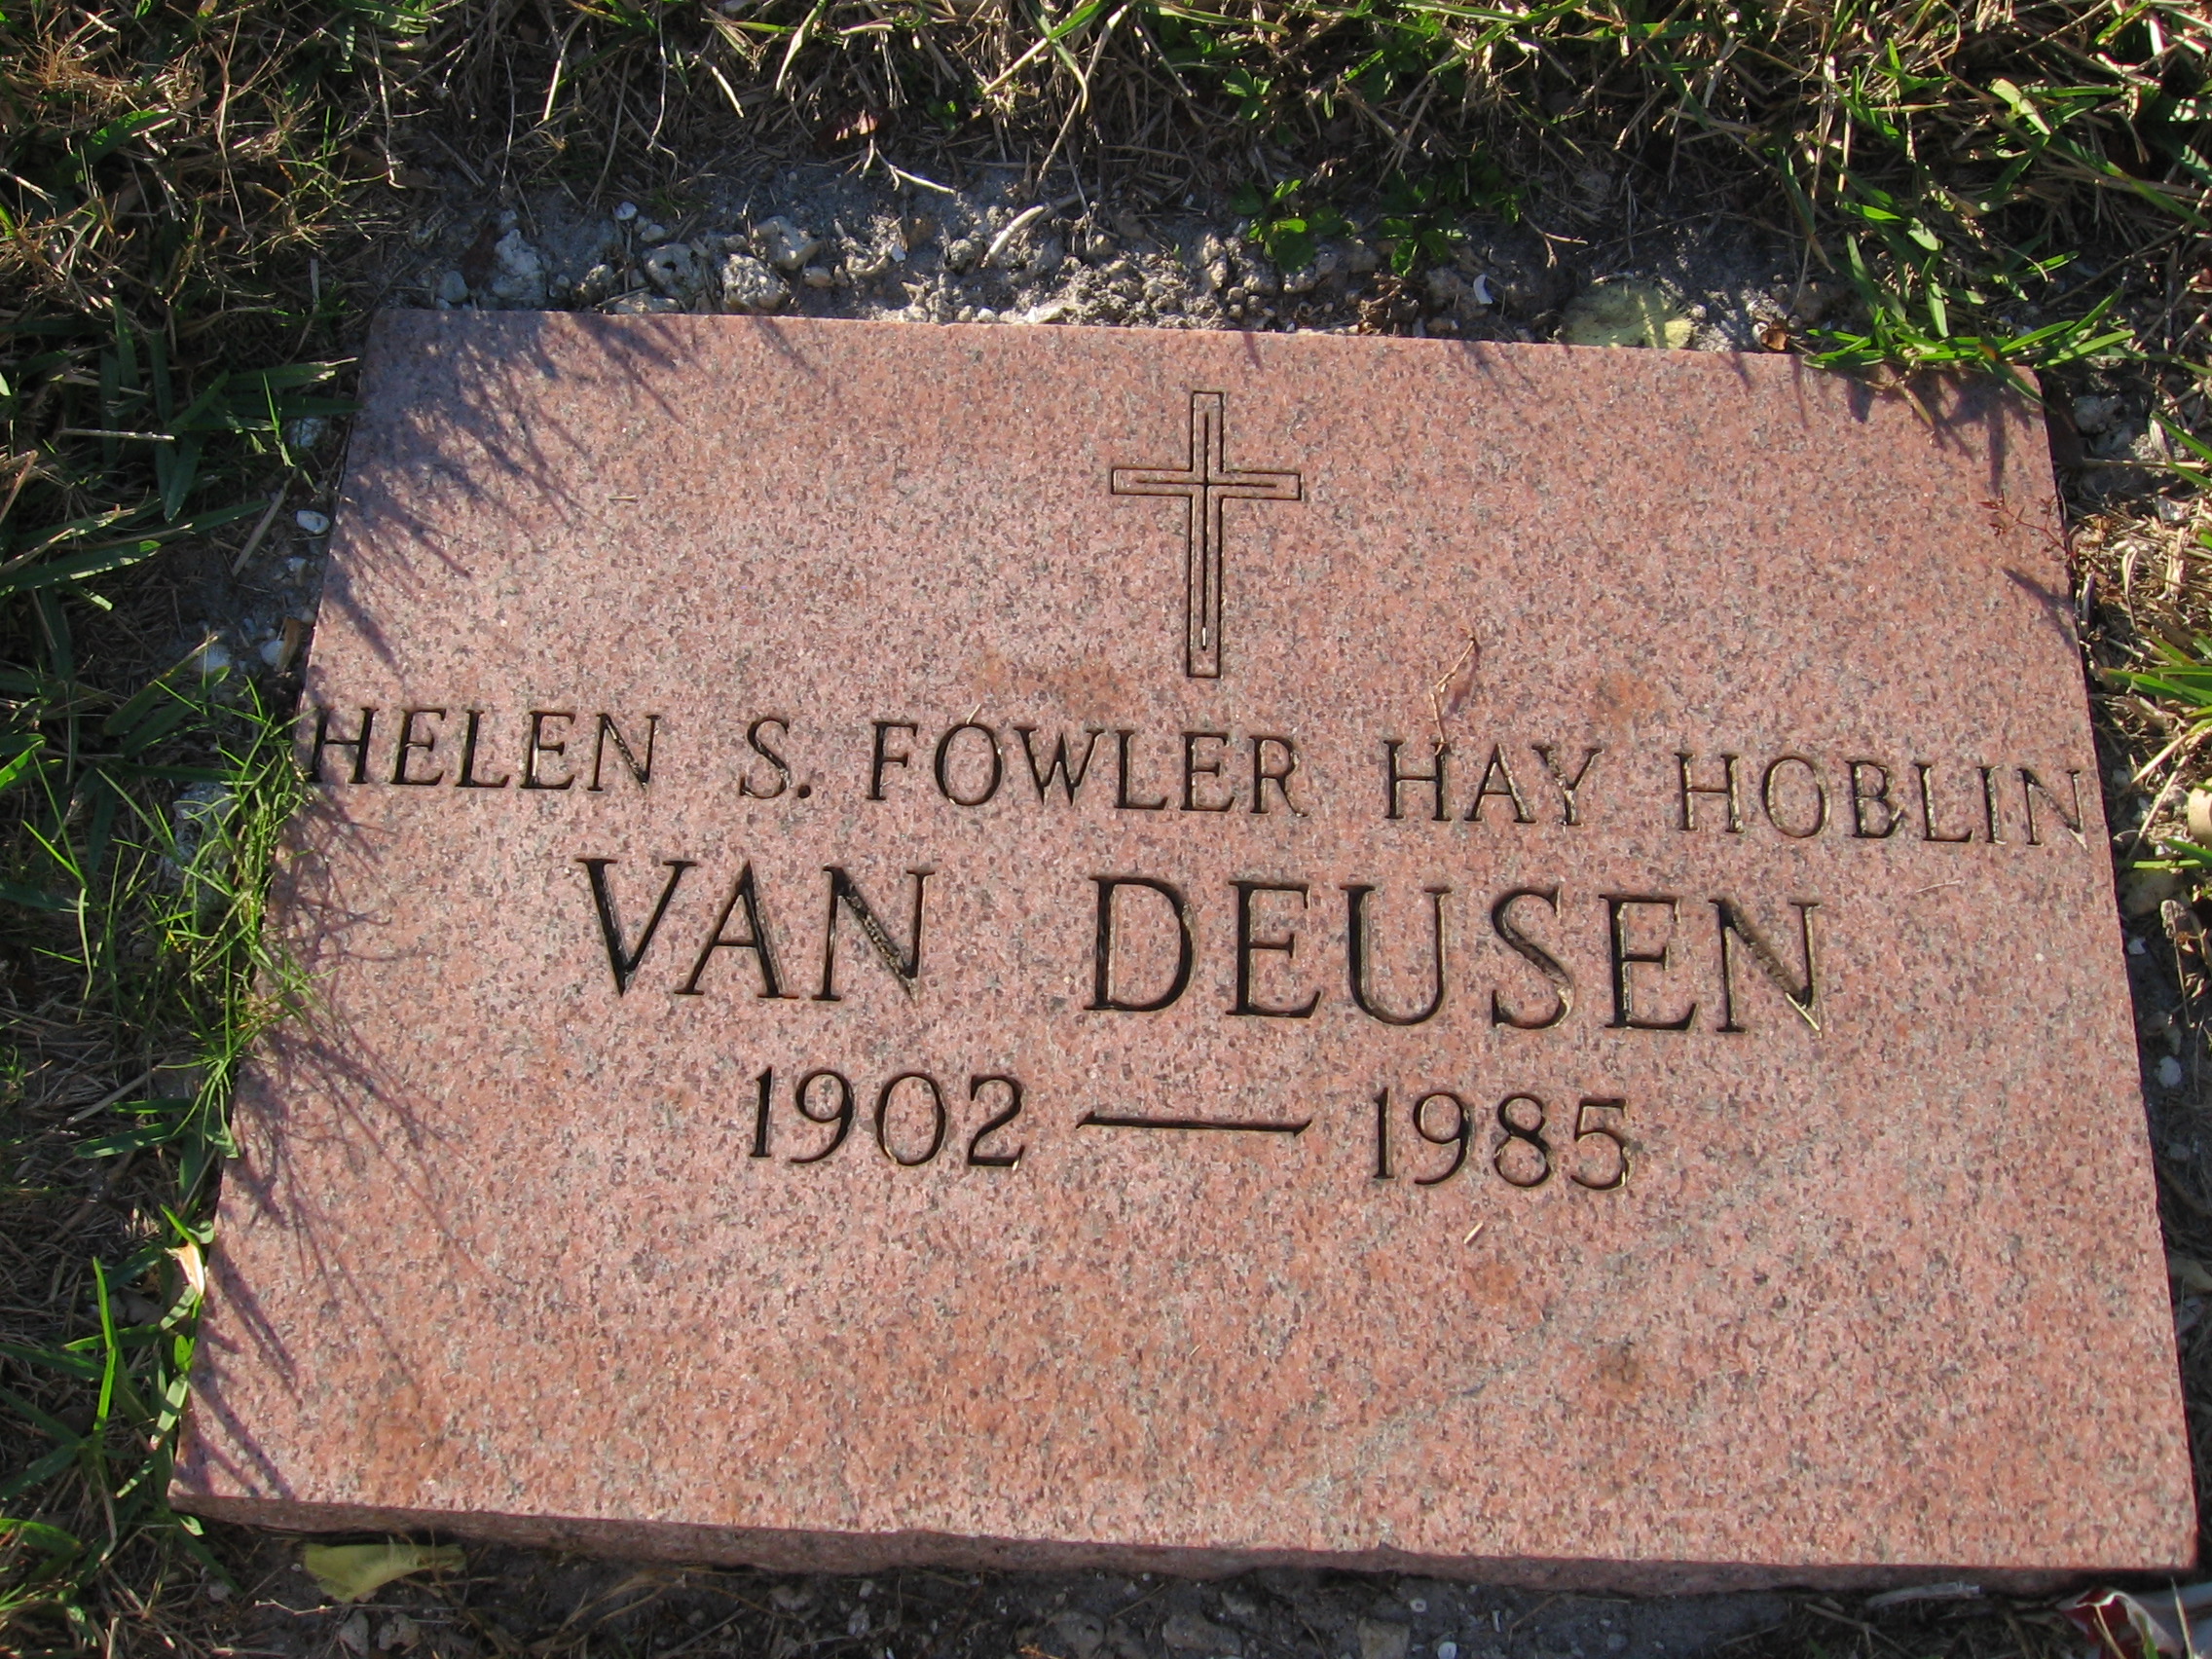 Helen S Fowler Hay Hoblin Van Duesen